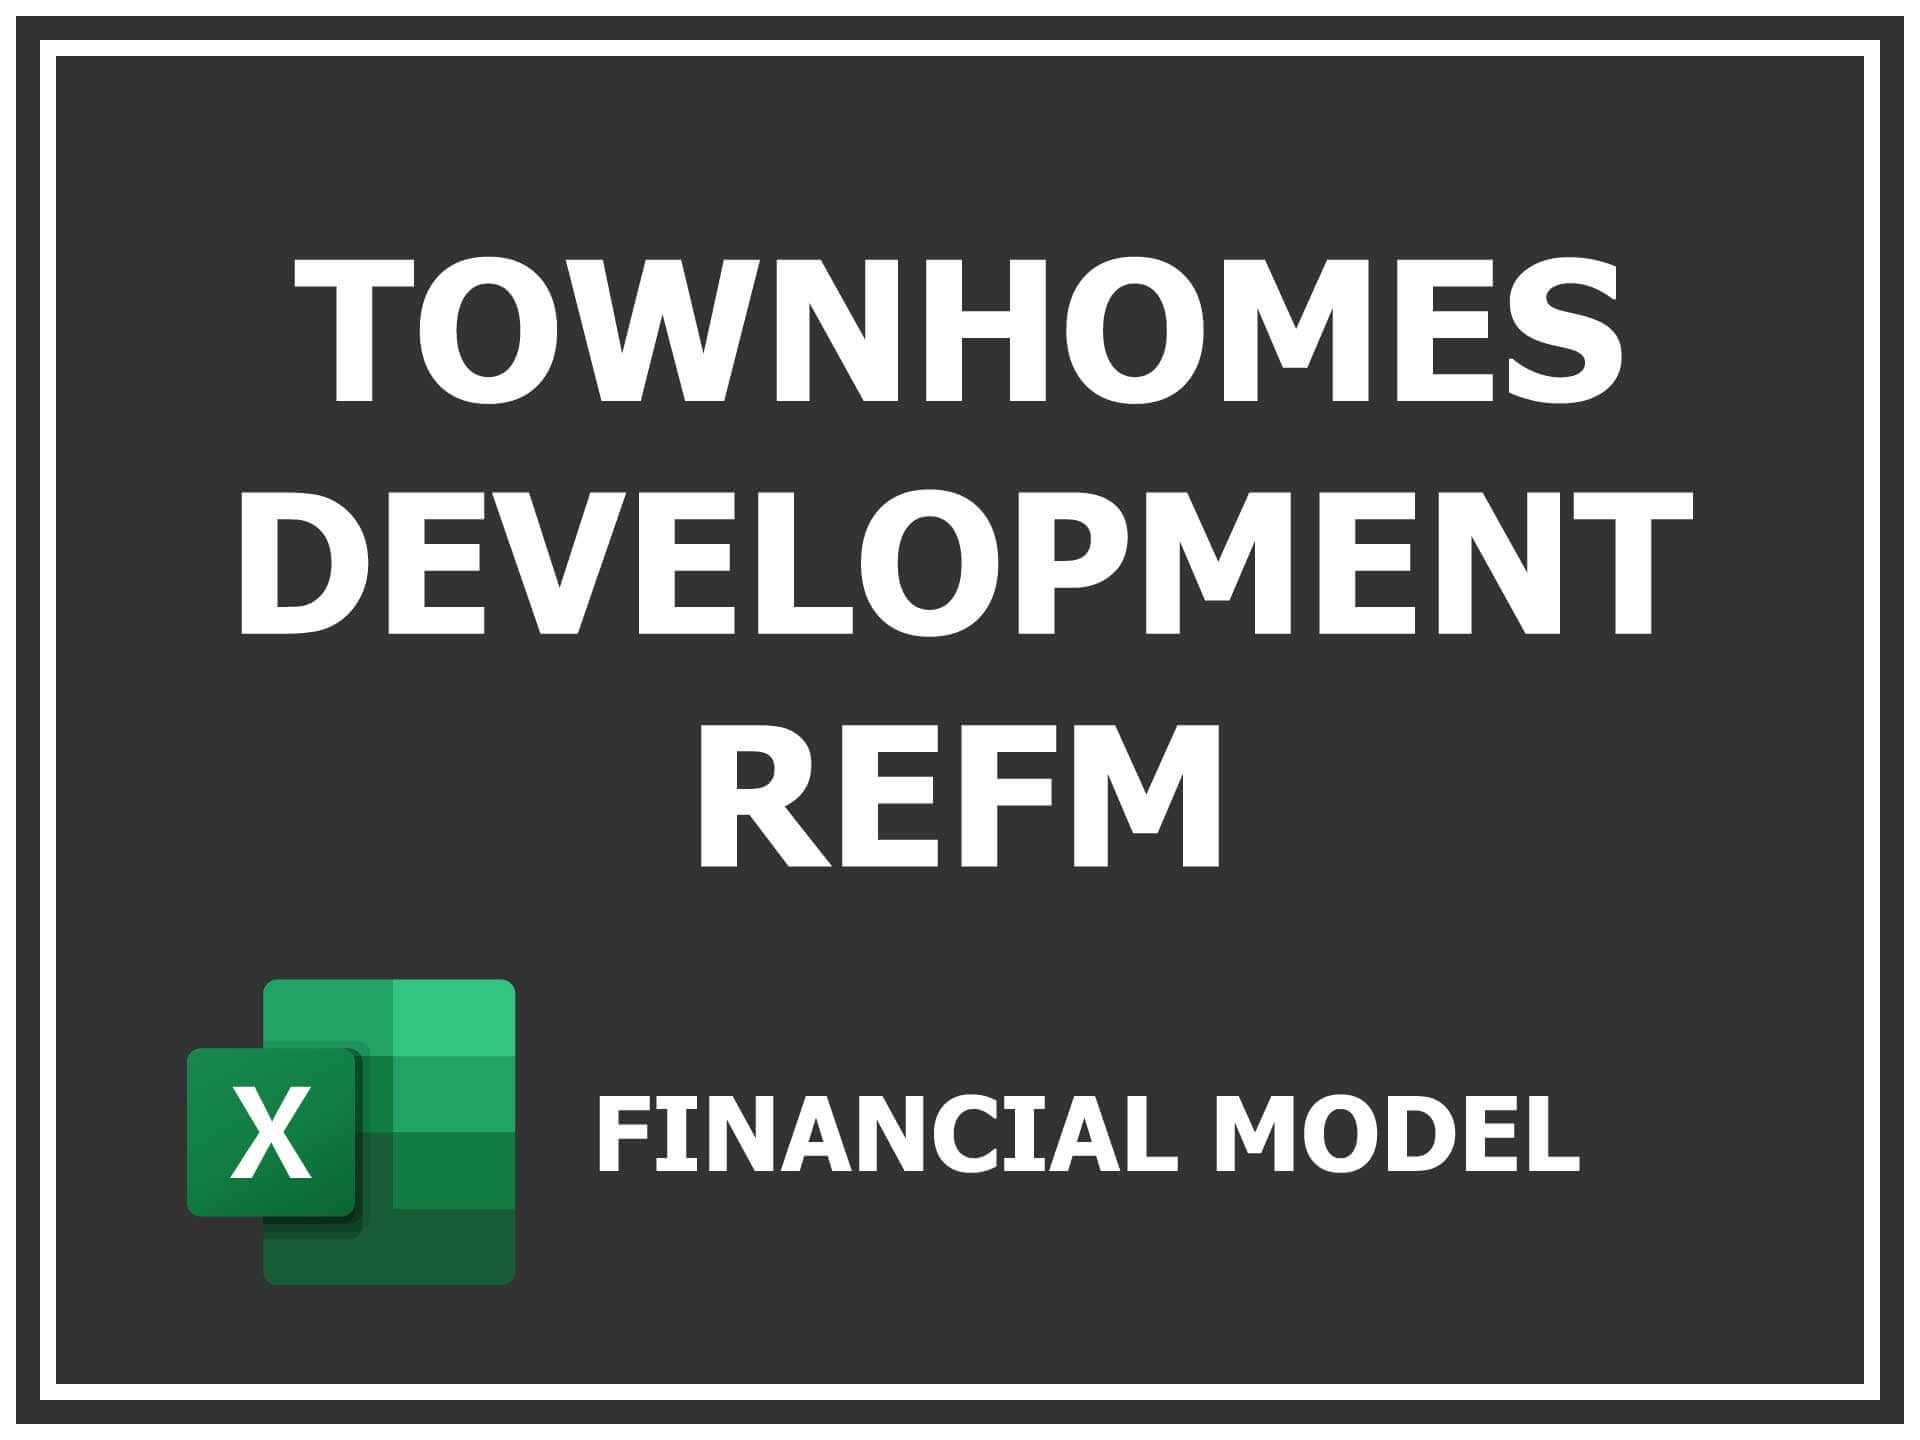 Townhomes Development Refm